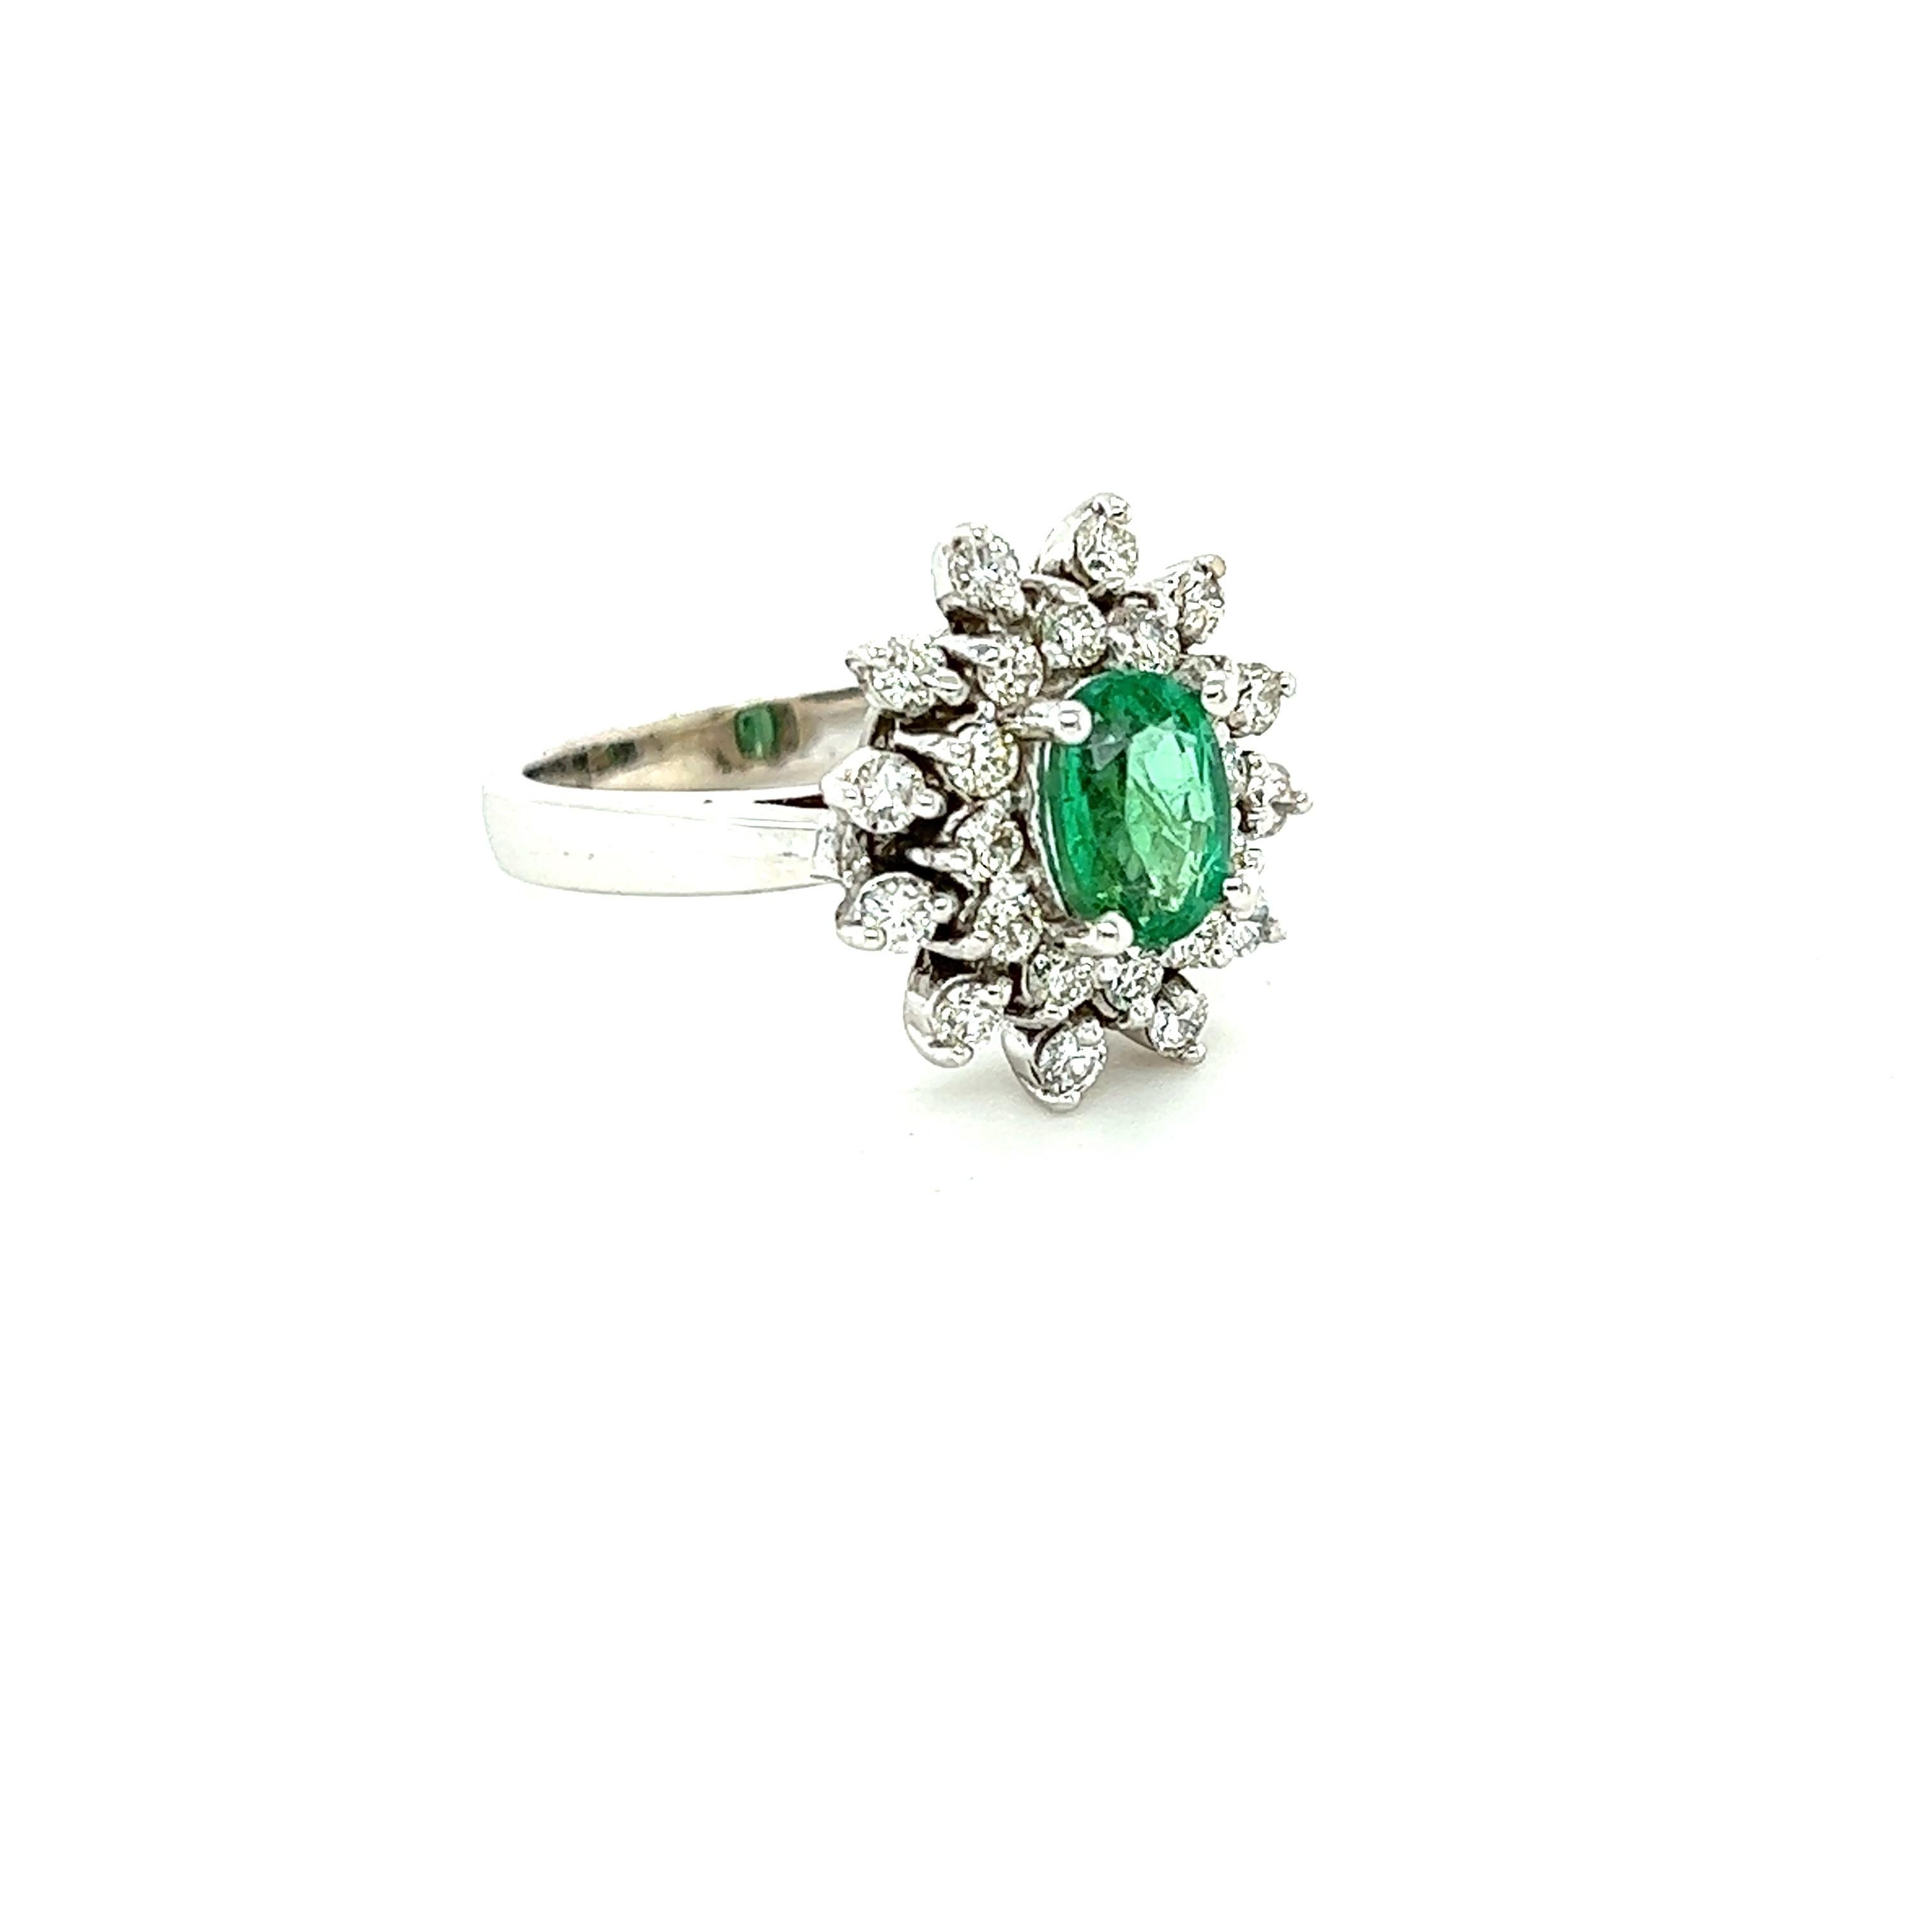 Dieser Ring hat einen 0,94 Karat schweren Smaragd im Ovalschliff und ist von 24 Diamanten im Rundschliff umgeben, die 0,66 Karat wiegen. (Reinheit: SI, Farbe: F) Das Gesamtkaratgewicht des Rings beträgt 1,60 Karat. 
Der Smaragd im Ovalschliff hat